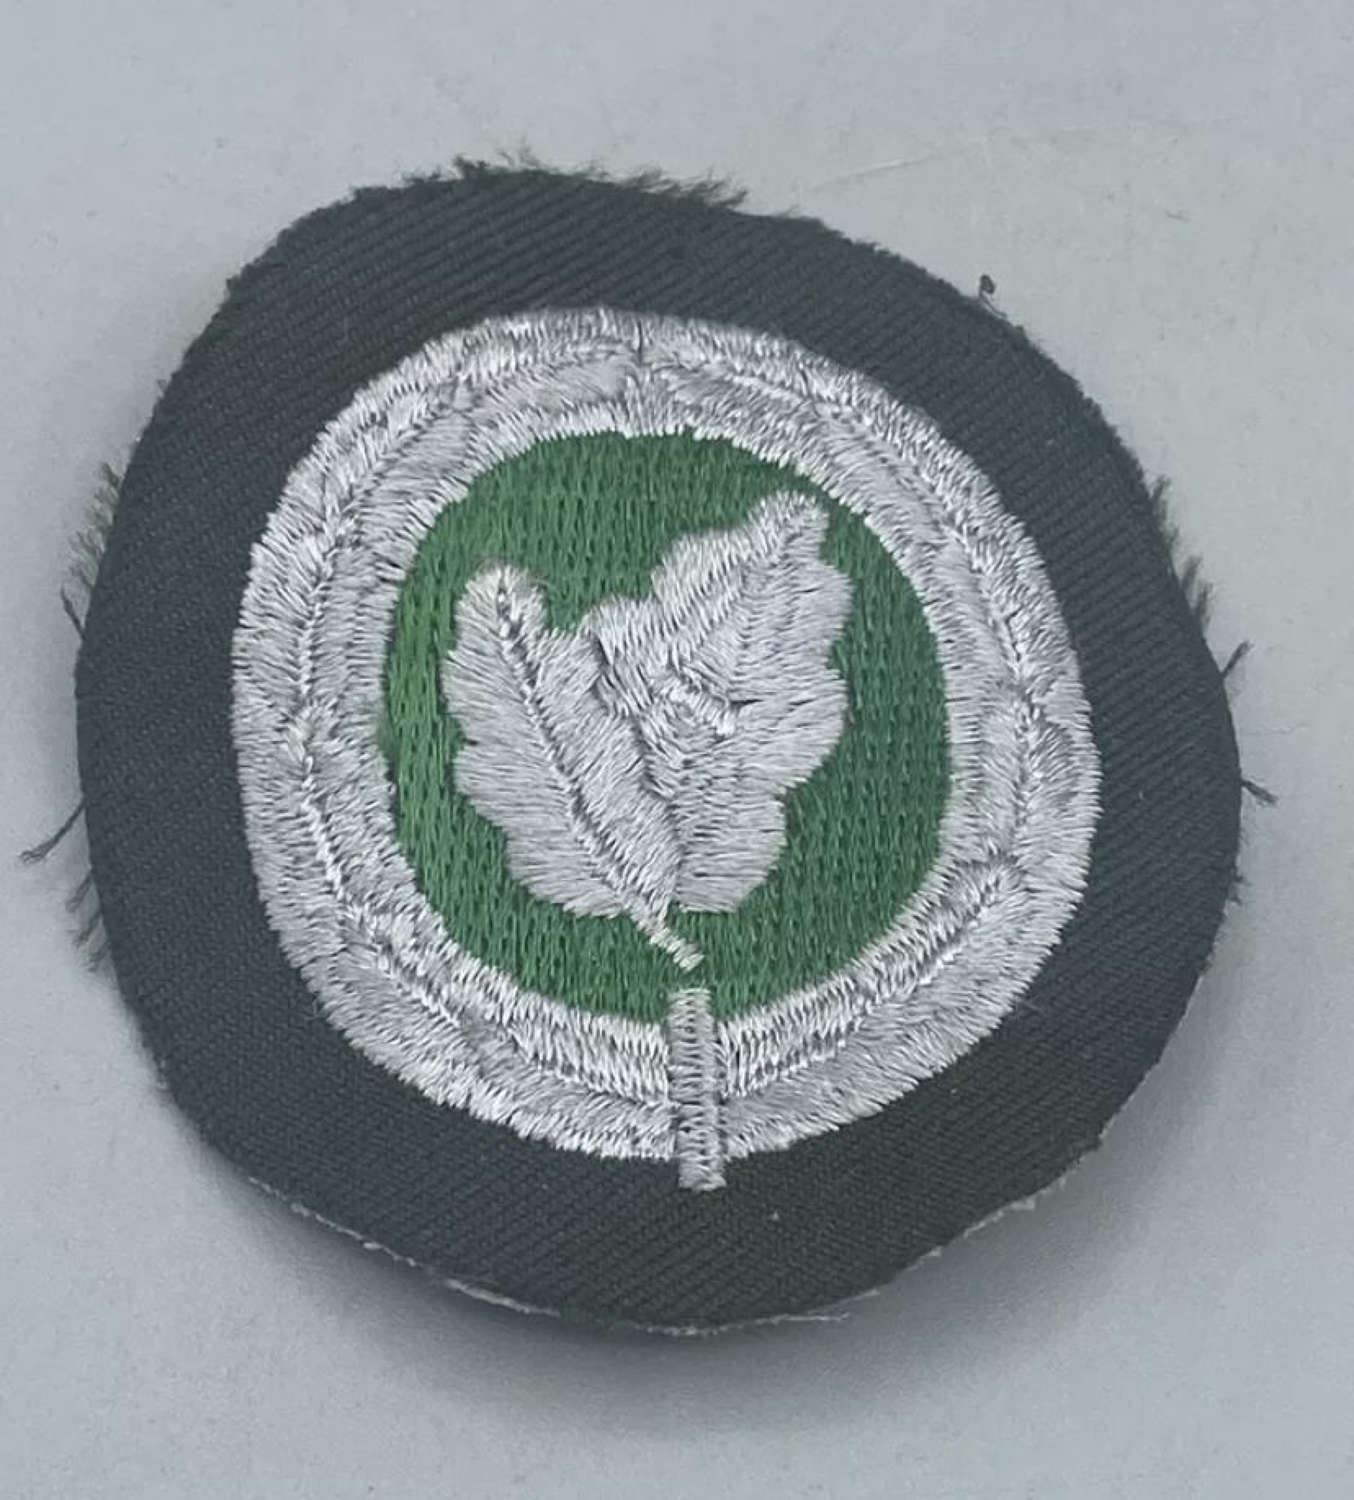 1950s DDR ABV Police Shoulder Qualification Oak Leaf Patches